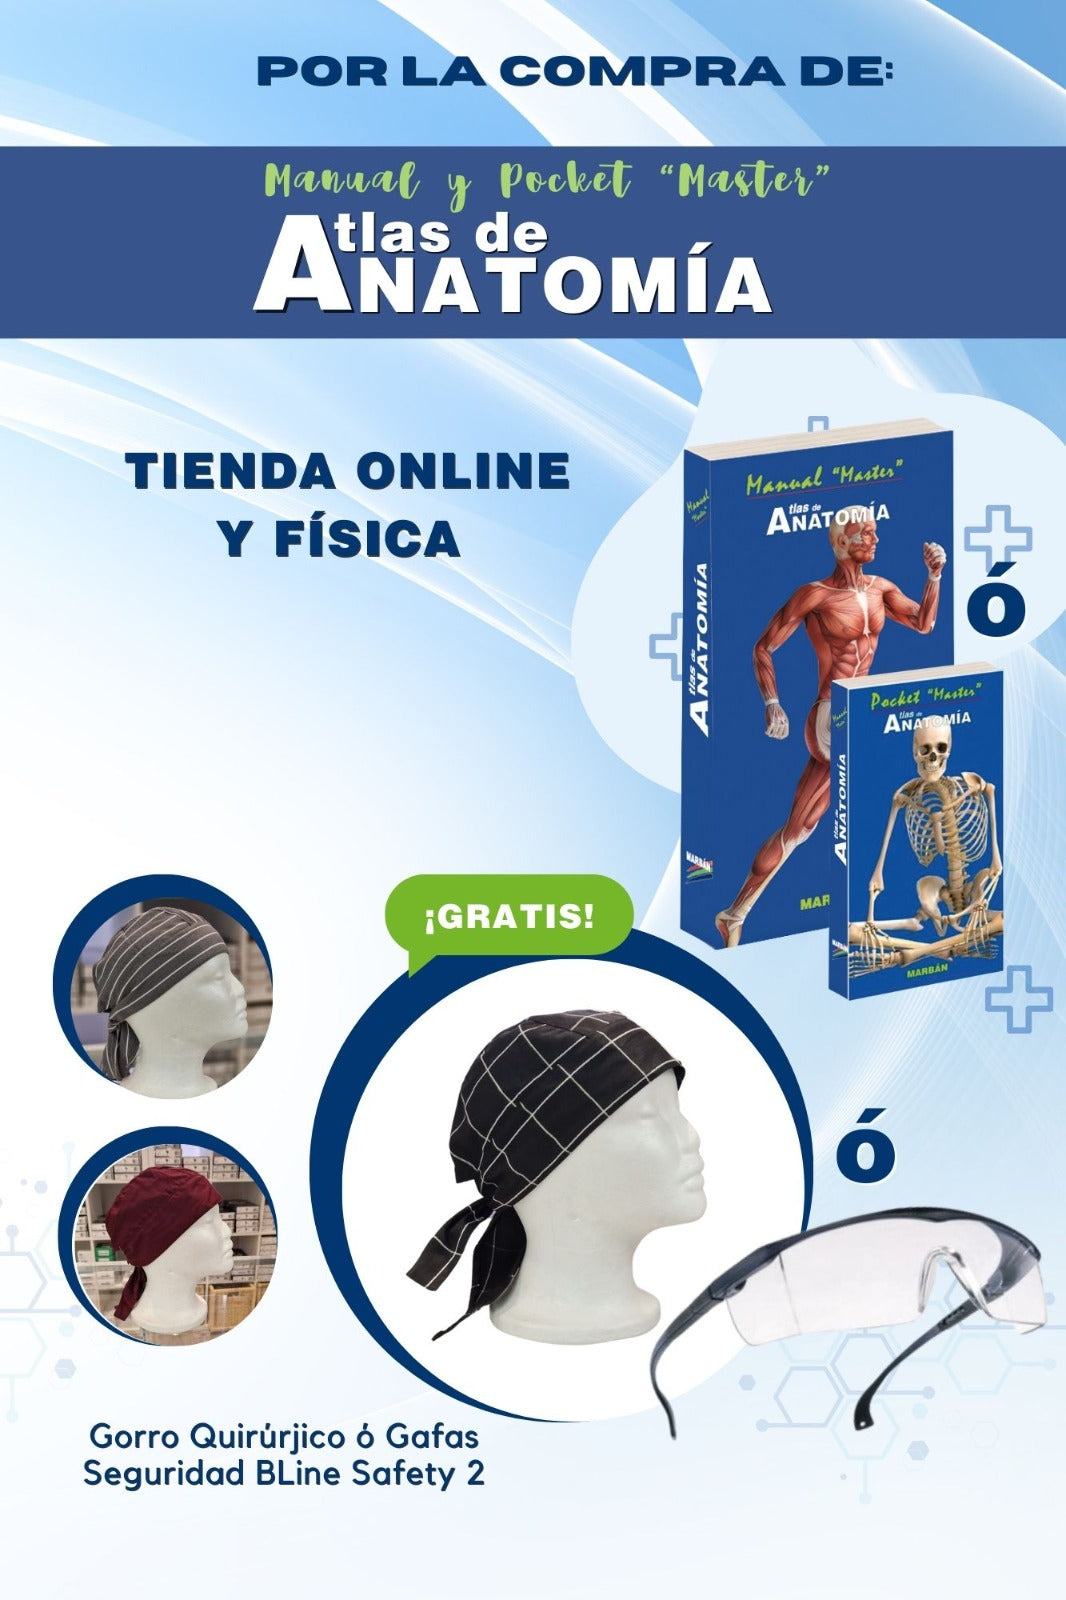 Master Atlas de Anatomía - Manual (¡Gorro o Gafas de REGALO!)